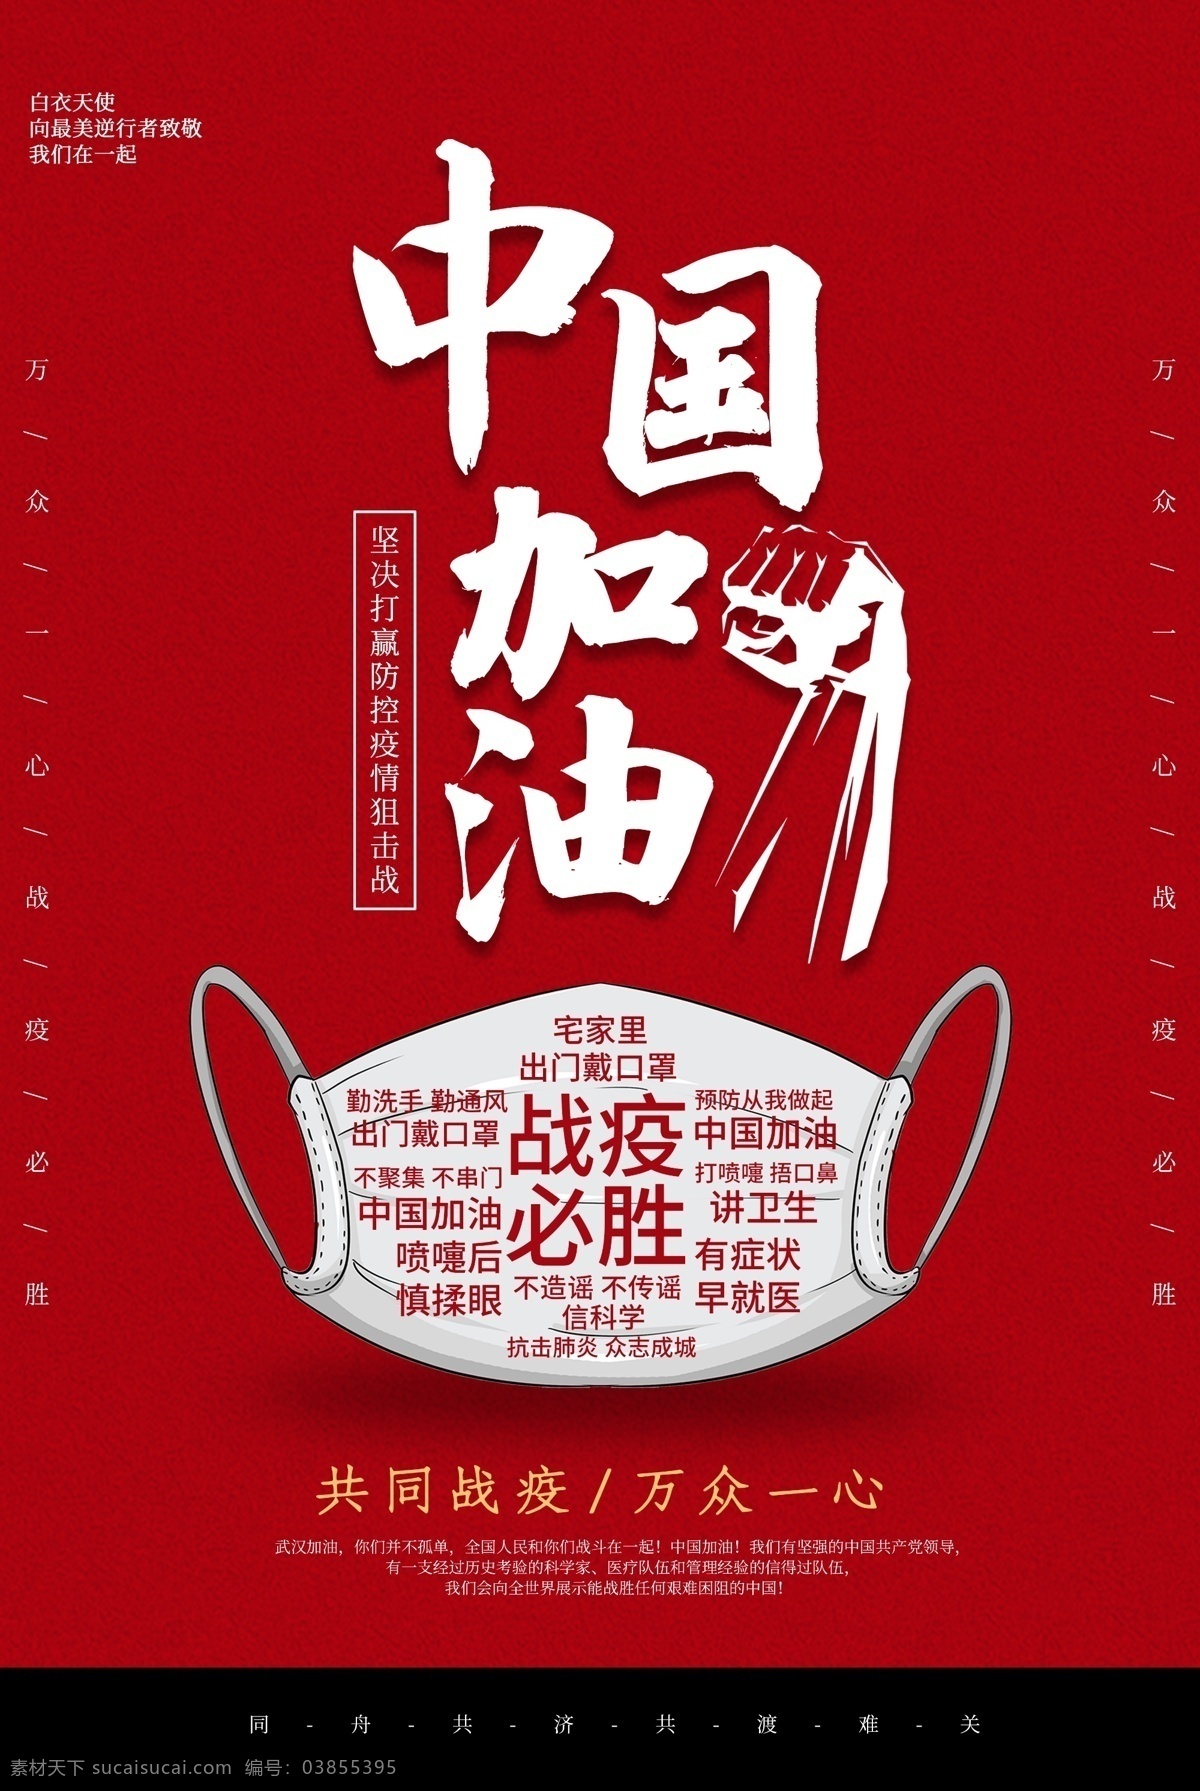 中国 加油 疫情 战胜 红色 氛围 海报 中国加油